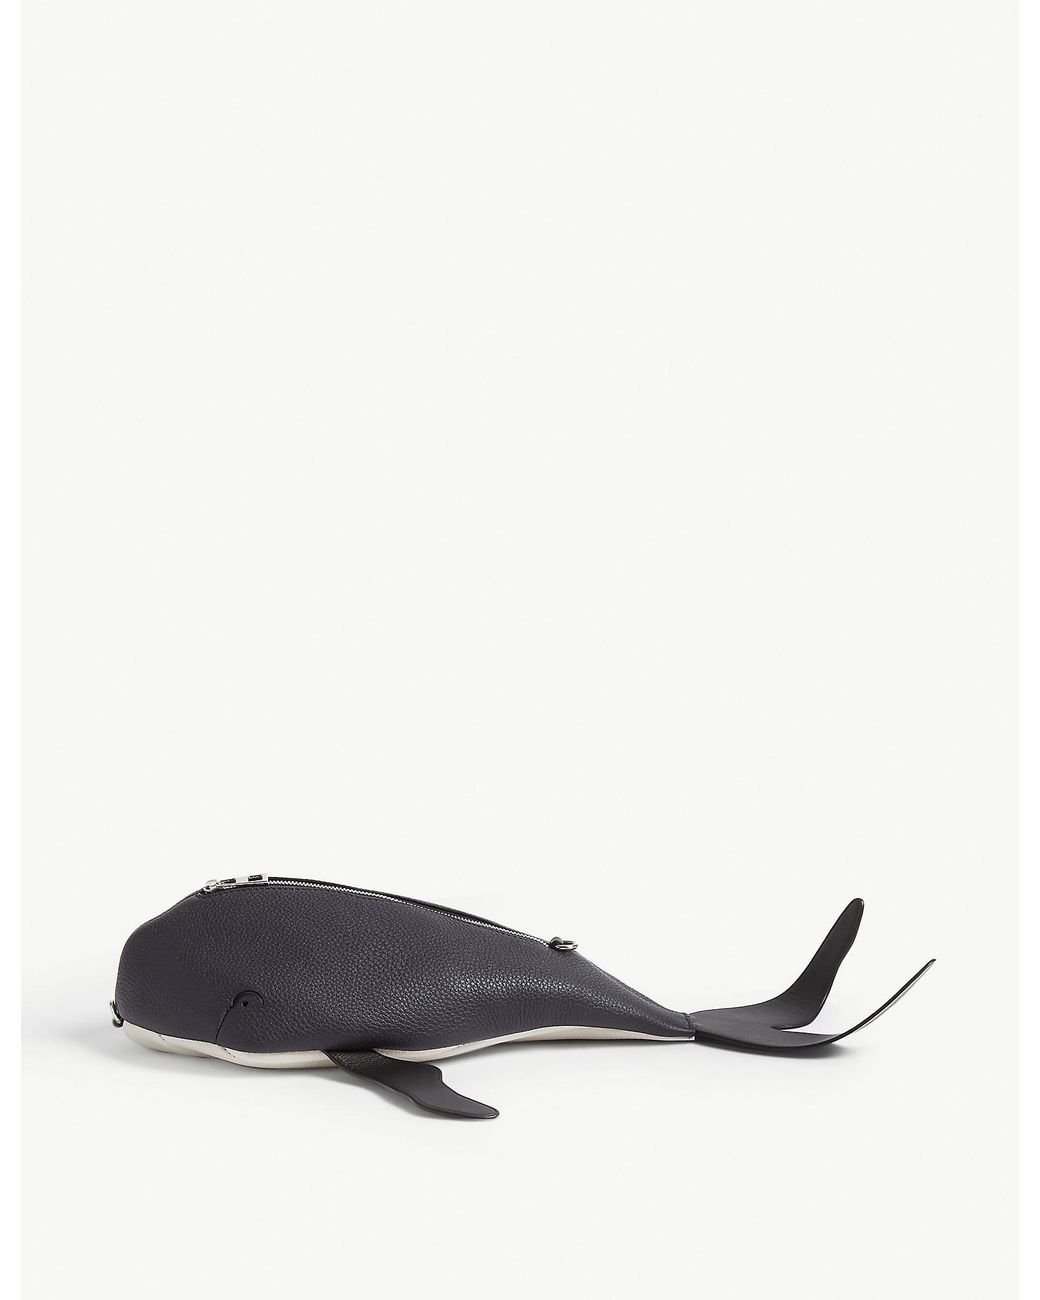 Loewe + Paula's Ibiza Whale Textured-leather Bag Charm in Black